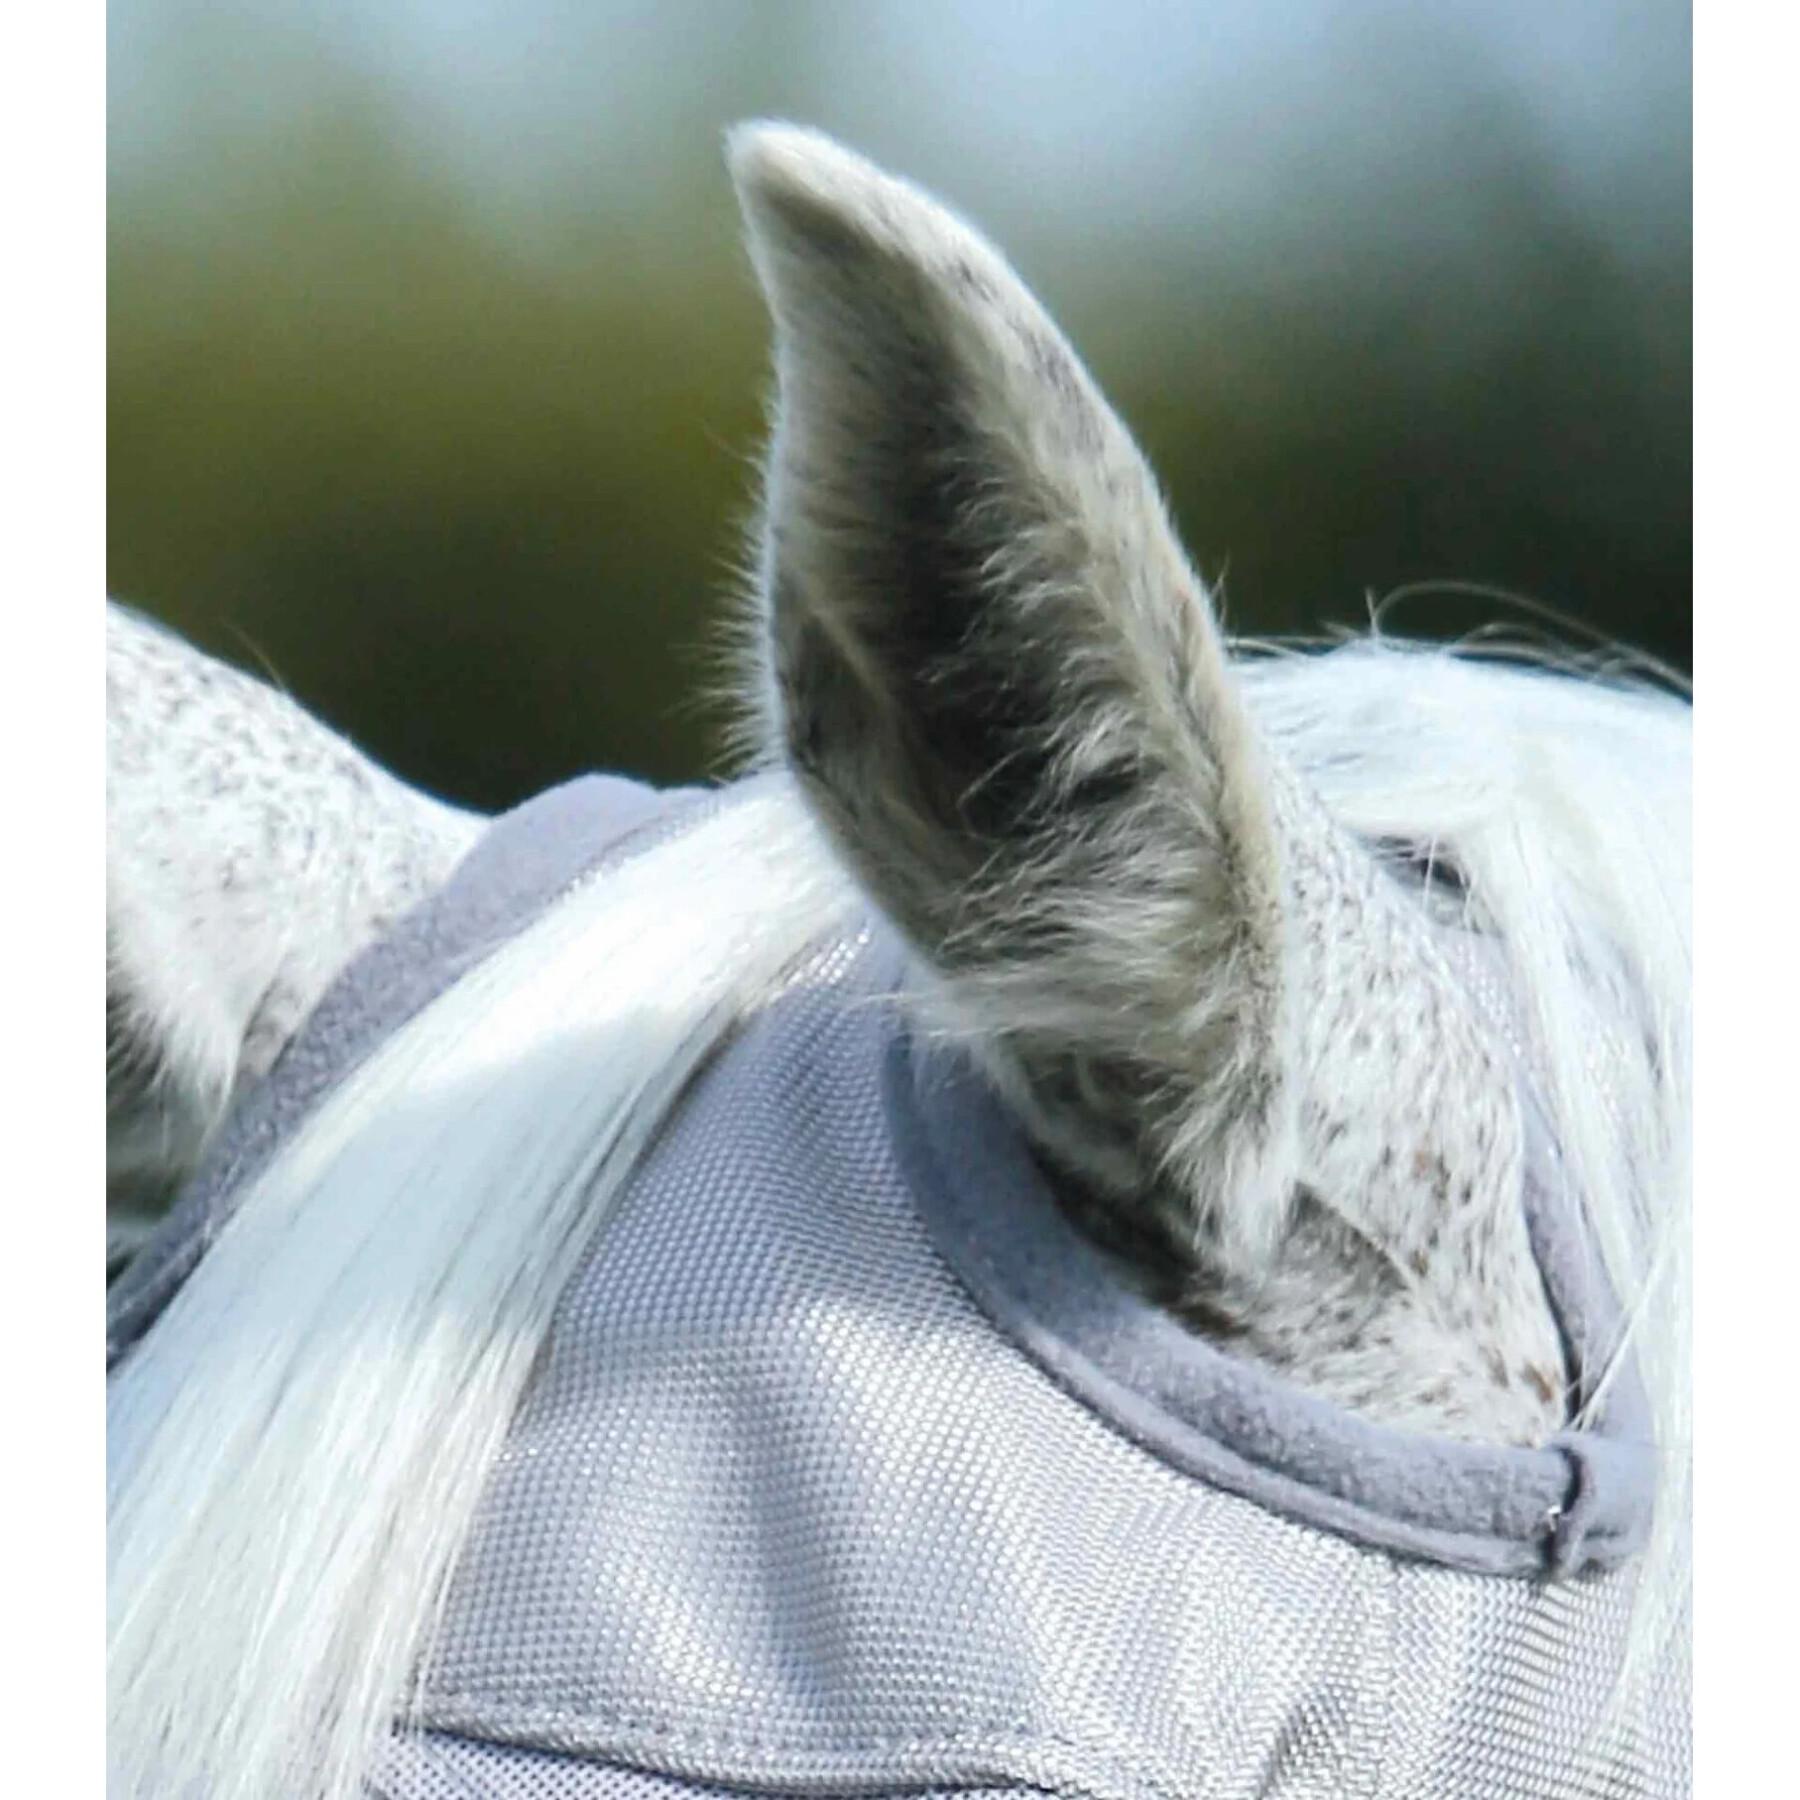 Maschera antimosche per cavalli Premier Equine Buster Standard